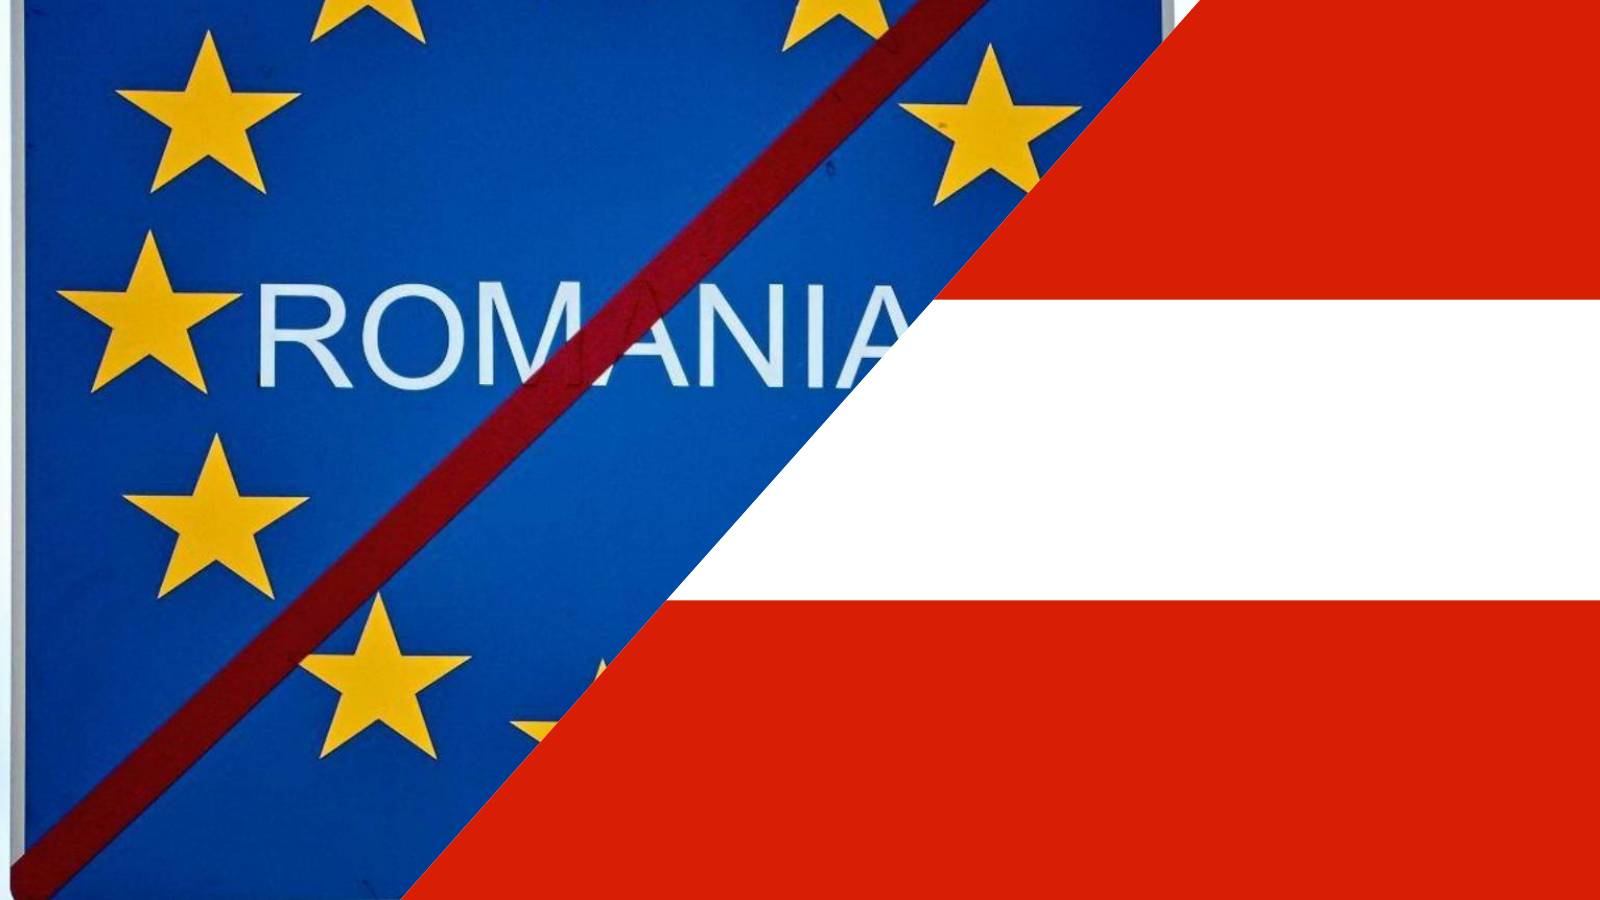 Østrig deler vicekanslerens meddelelse grunden til at blokere Rumæniens Schengen-tiltrædelse